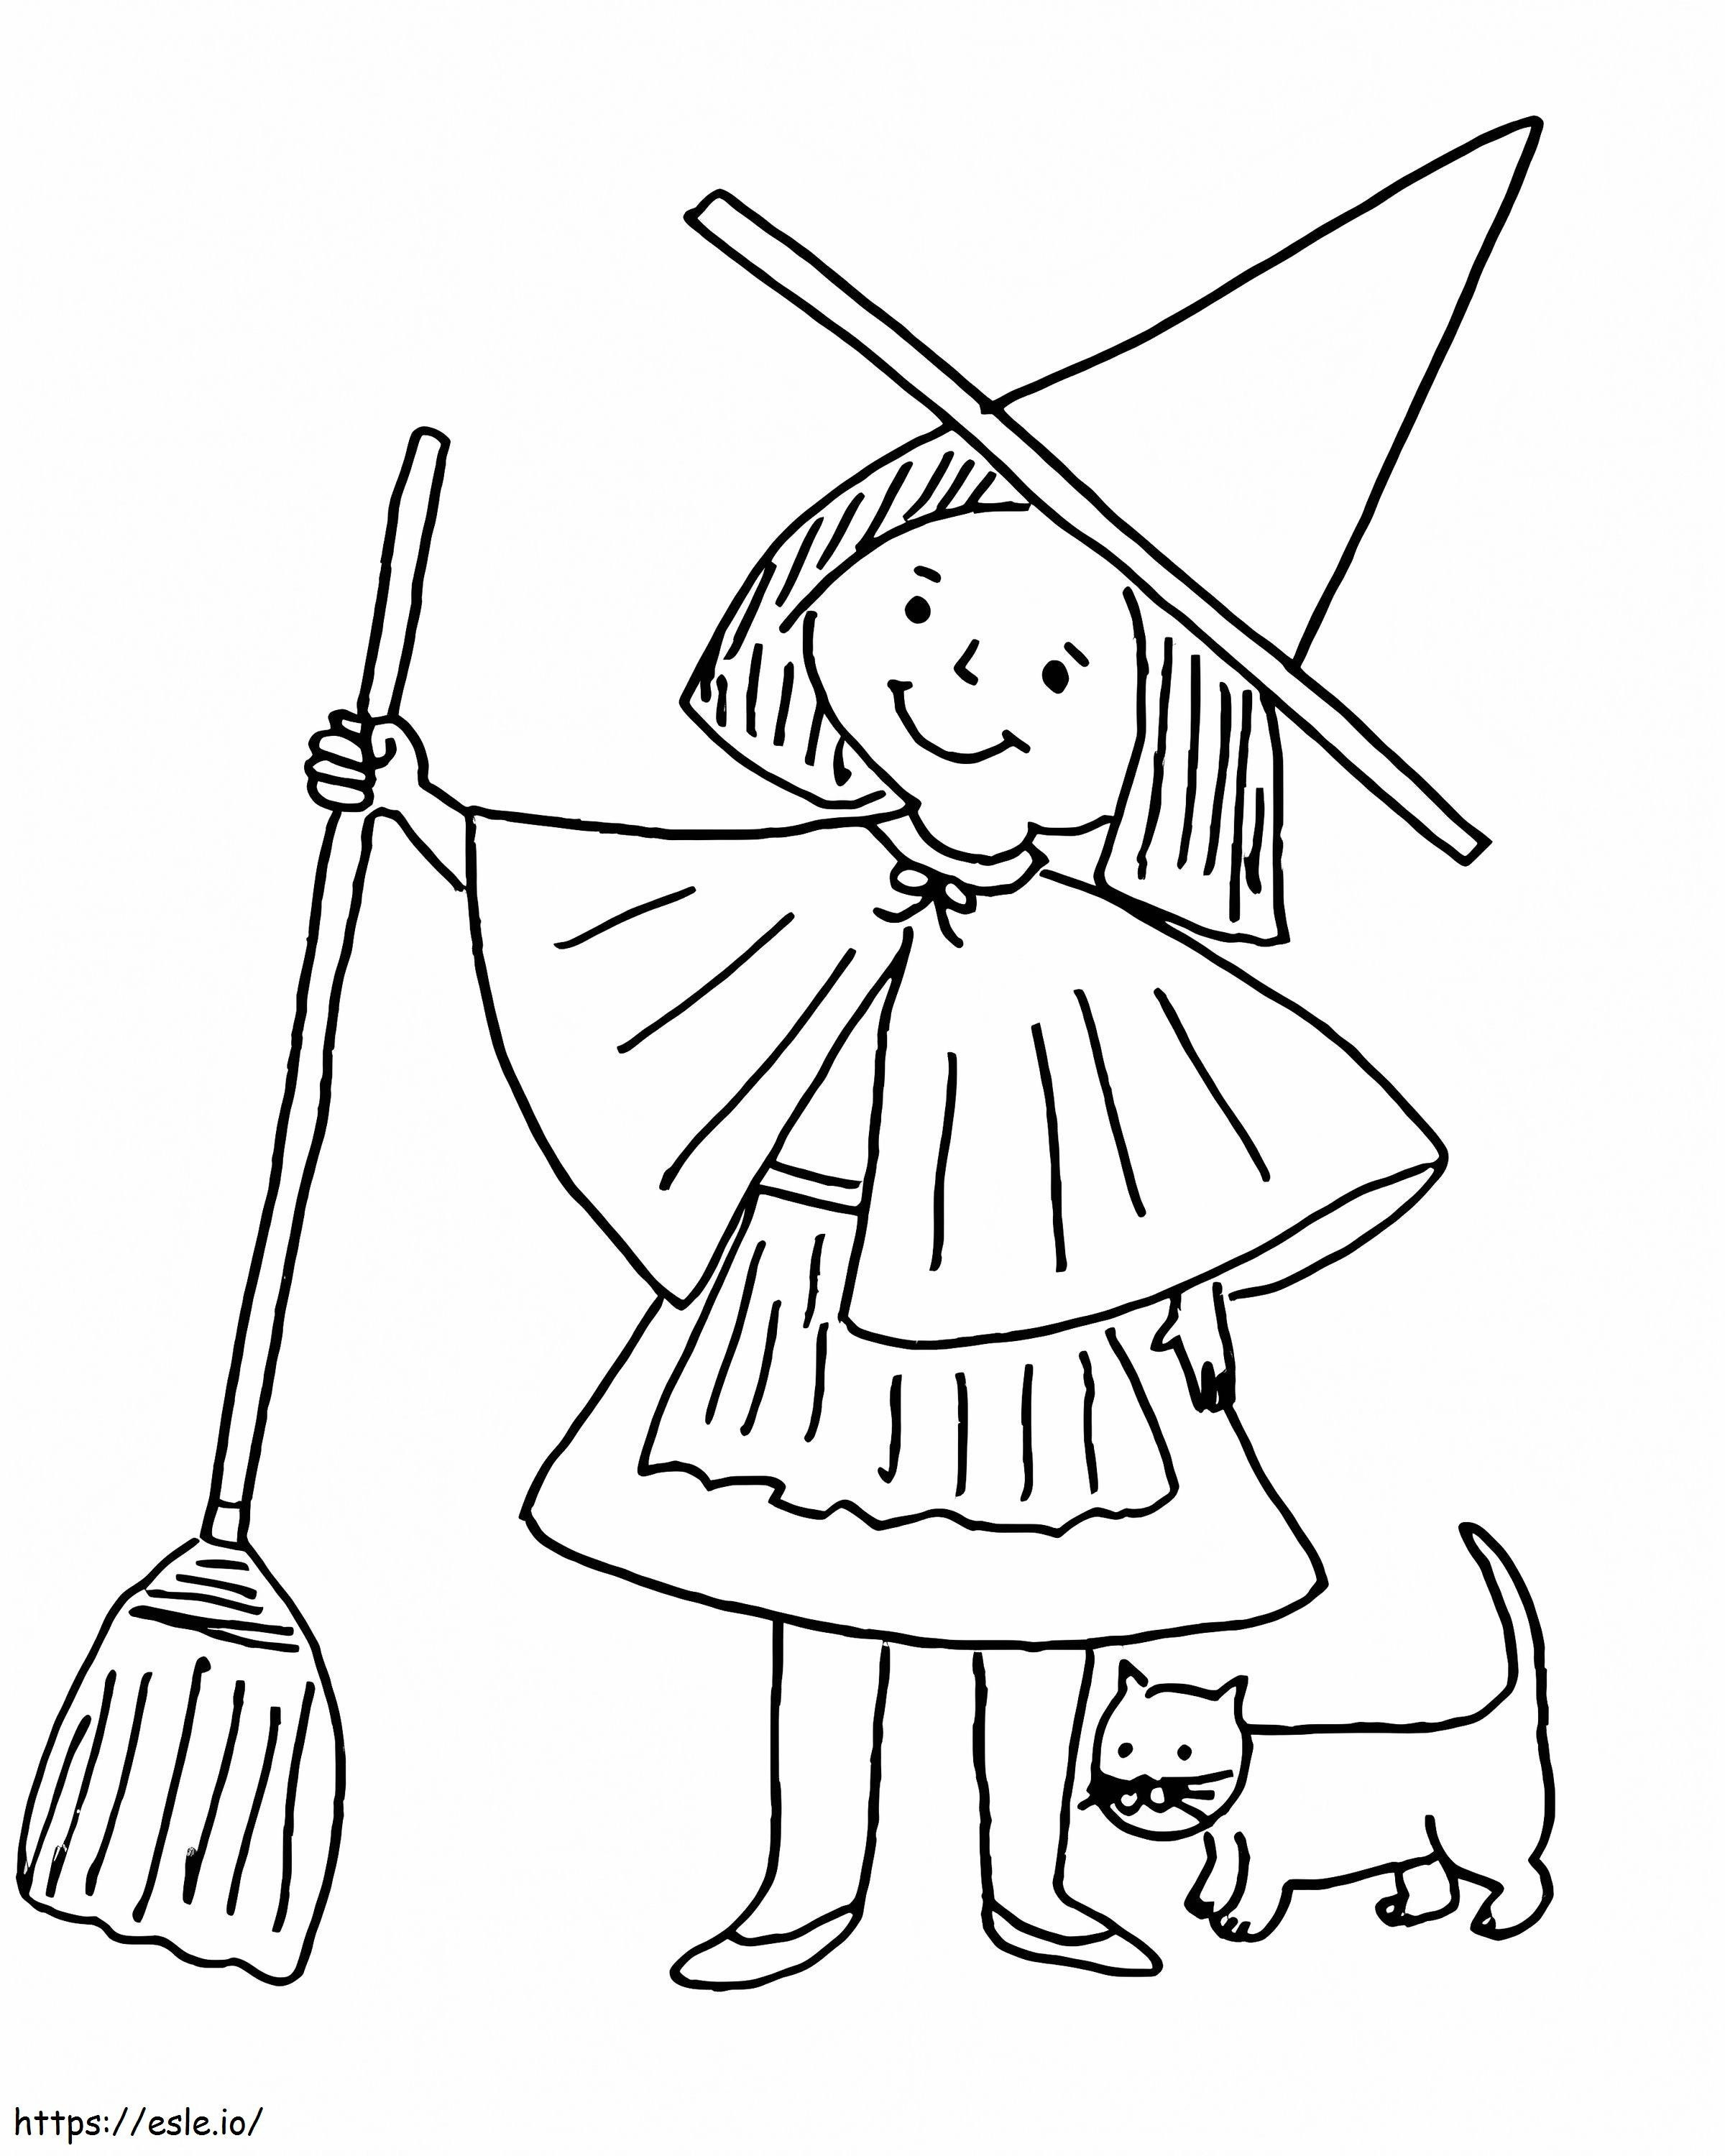 Menggambar Gadis Penyihir Dan Kucing Gambar Mewarnai